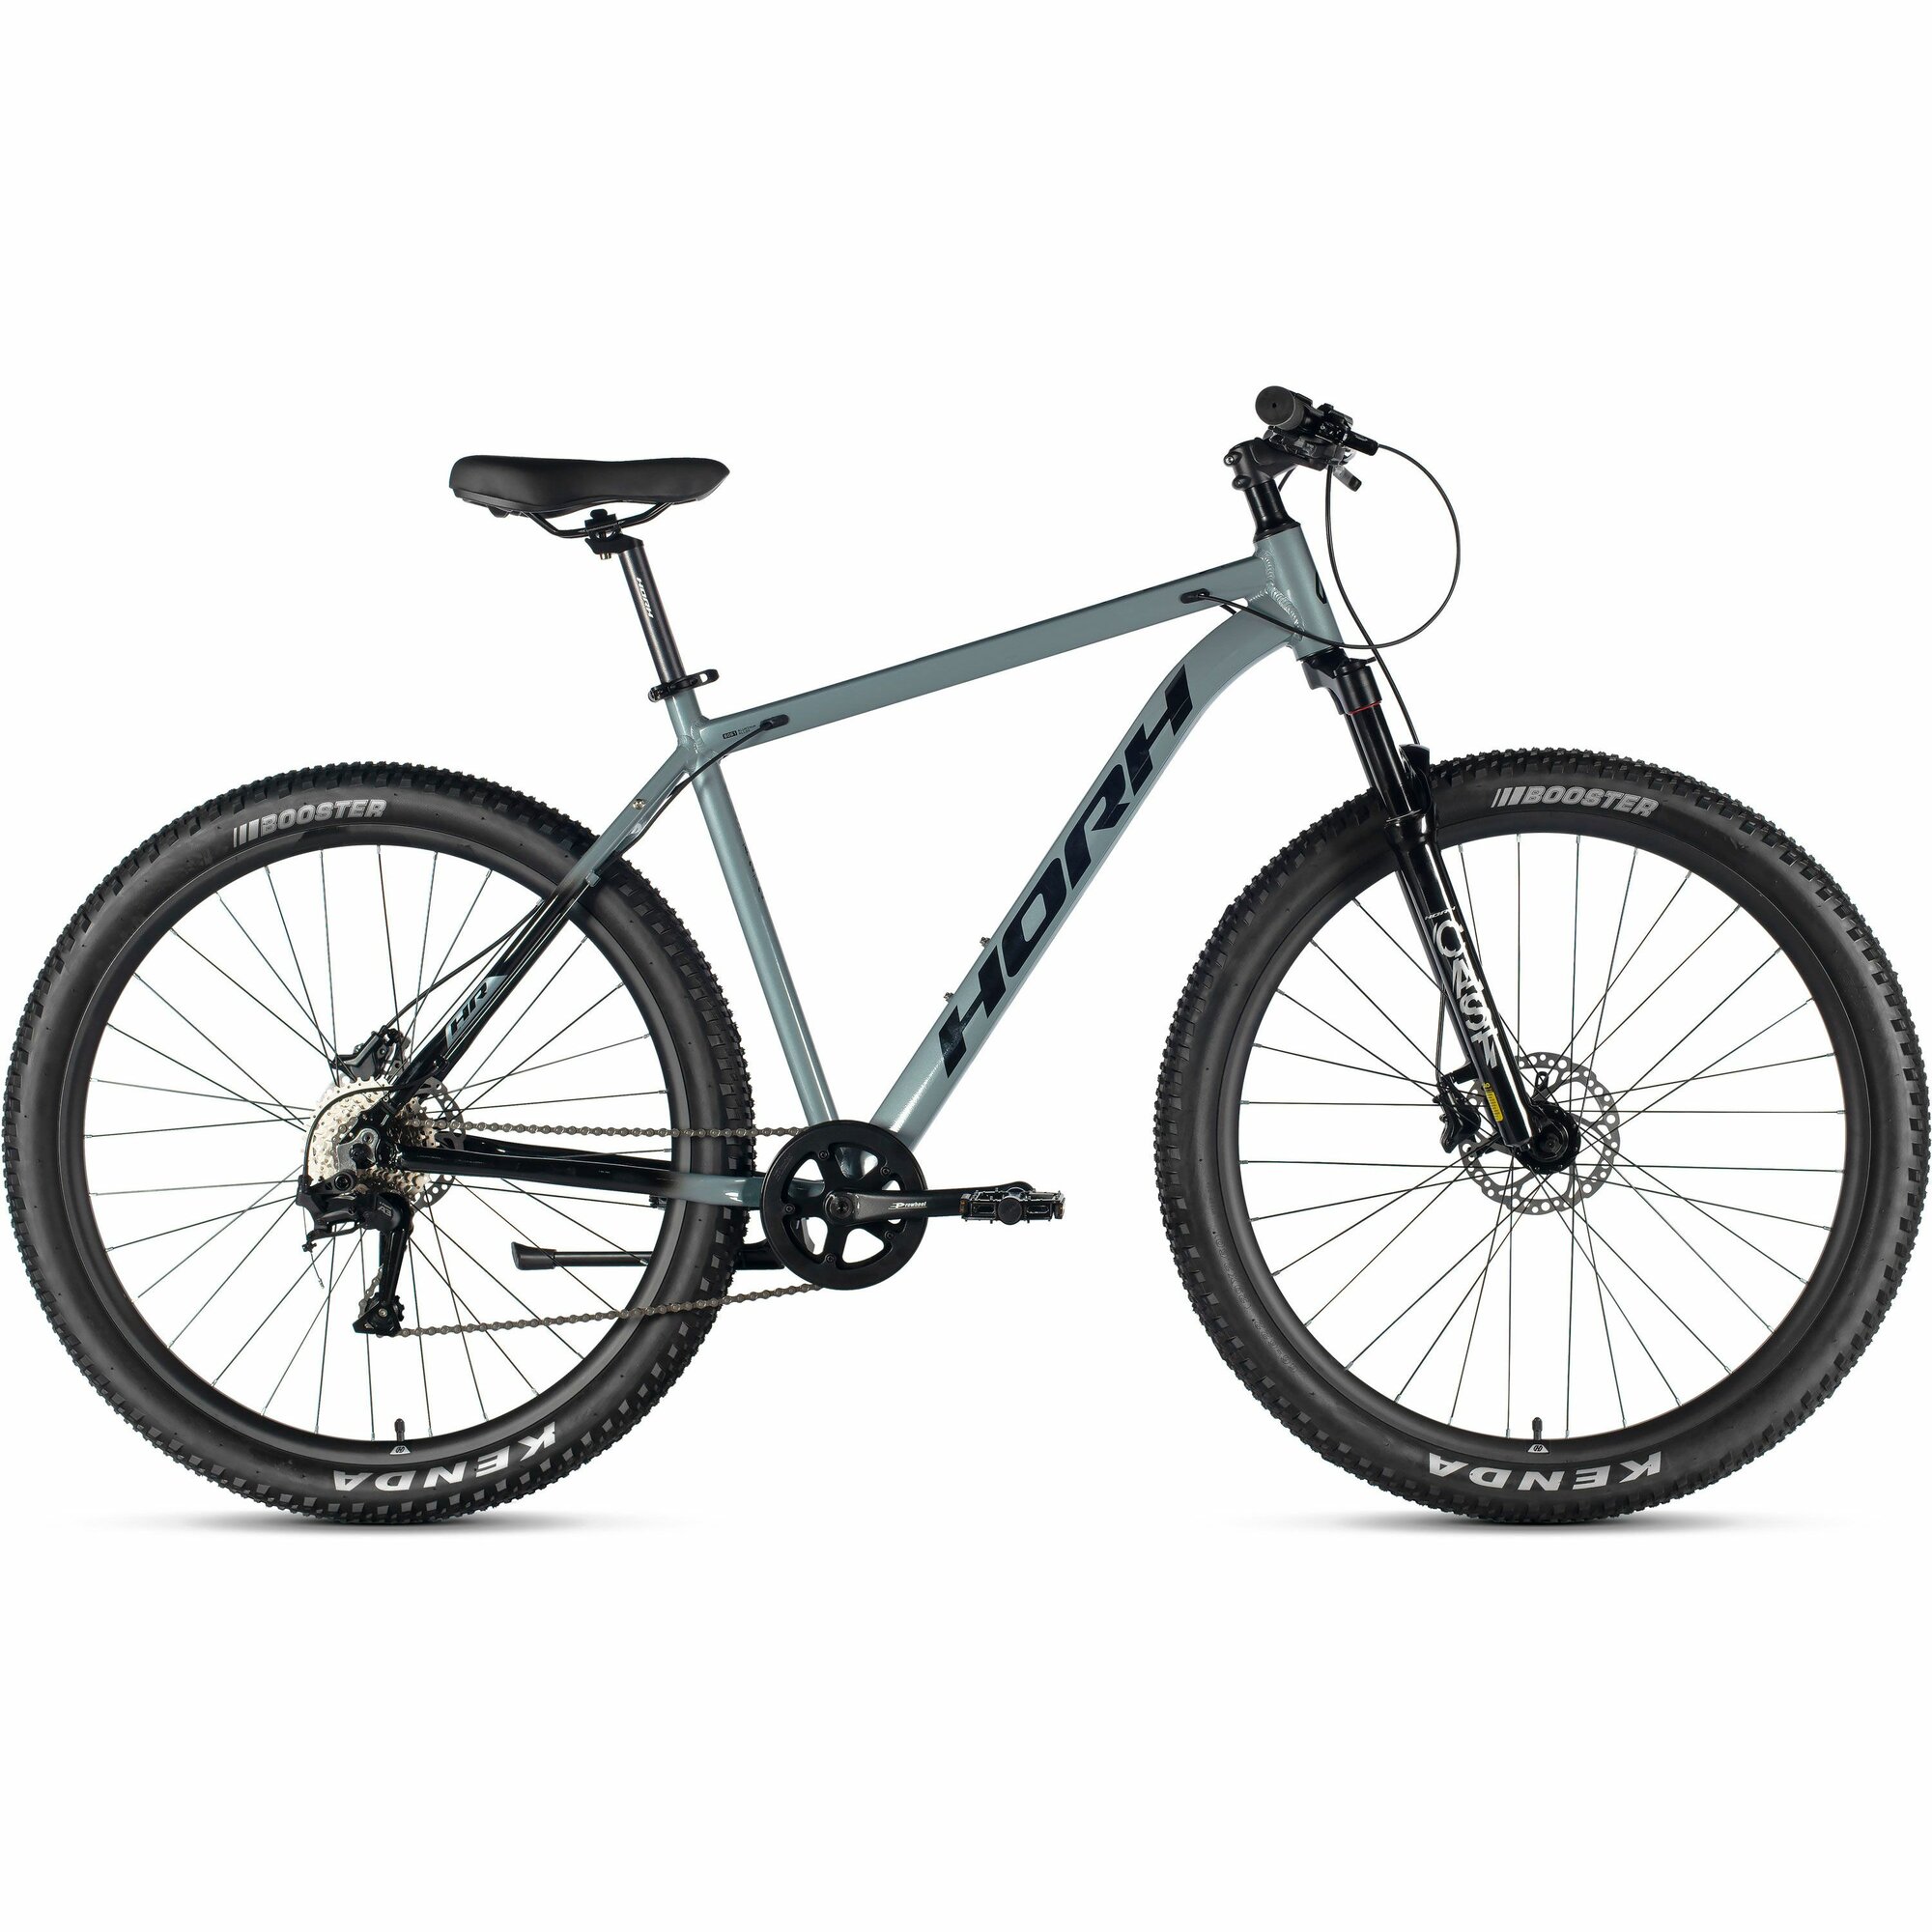 Велосипед горный HORH Cast AM 29" (2024), хардтейл, взрослый, мужской, алюминиевая рама, 8 скоростей, дисковые гидравлические тормоза, цвет Grey-Black, серый/черный цвет, размер рамы 23", для роста 190-205 см